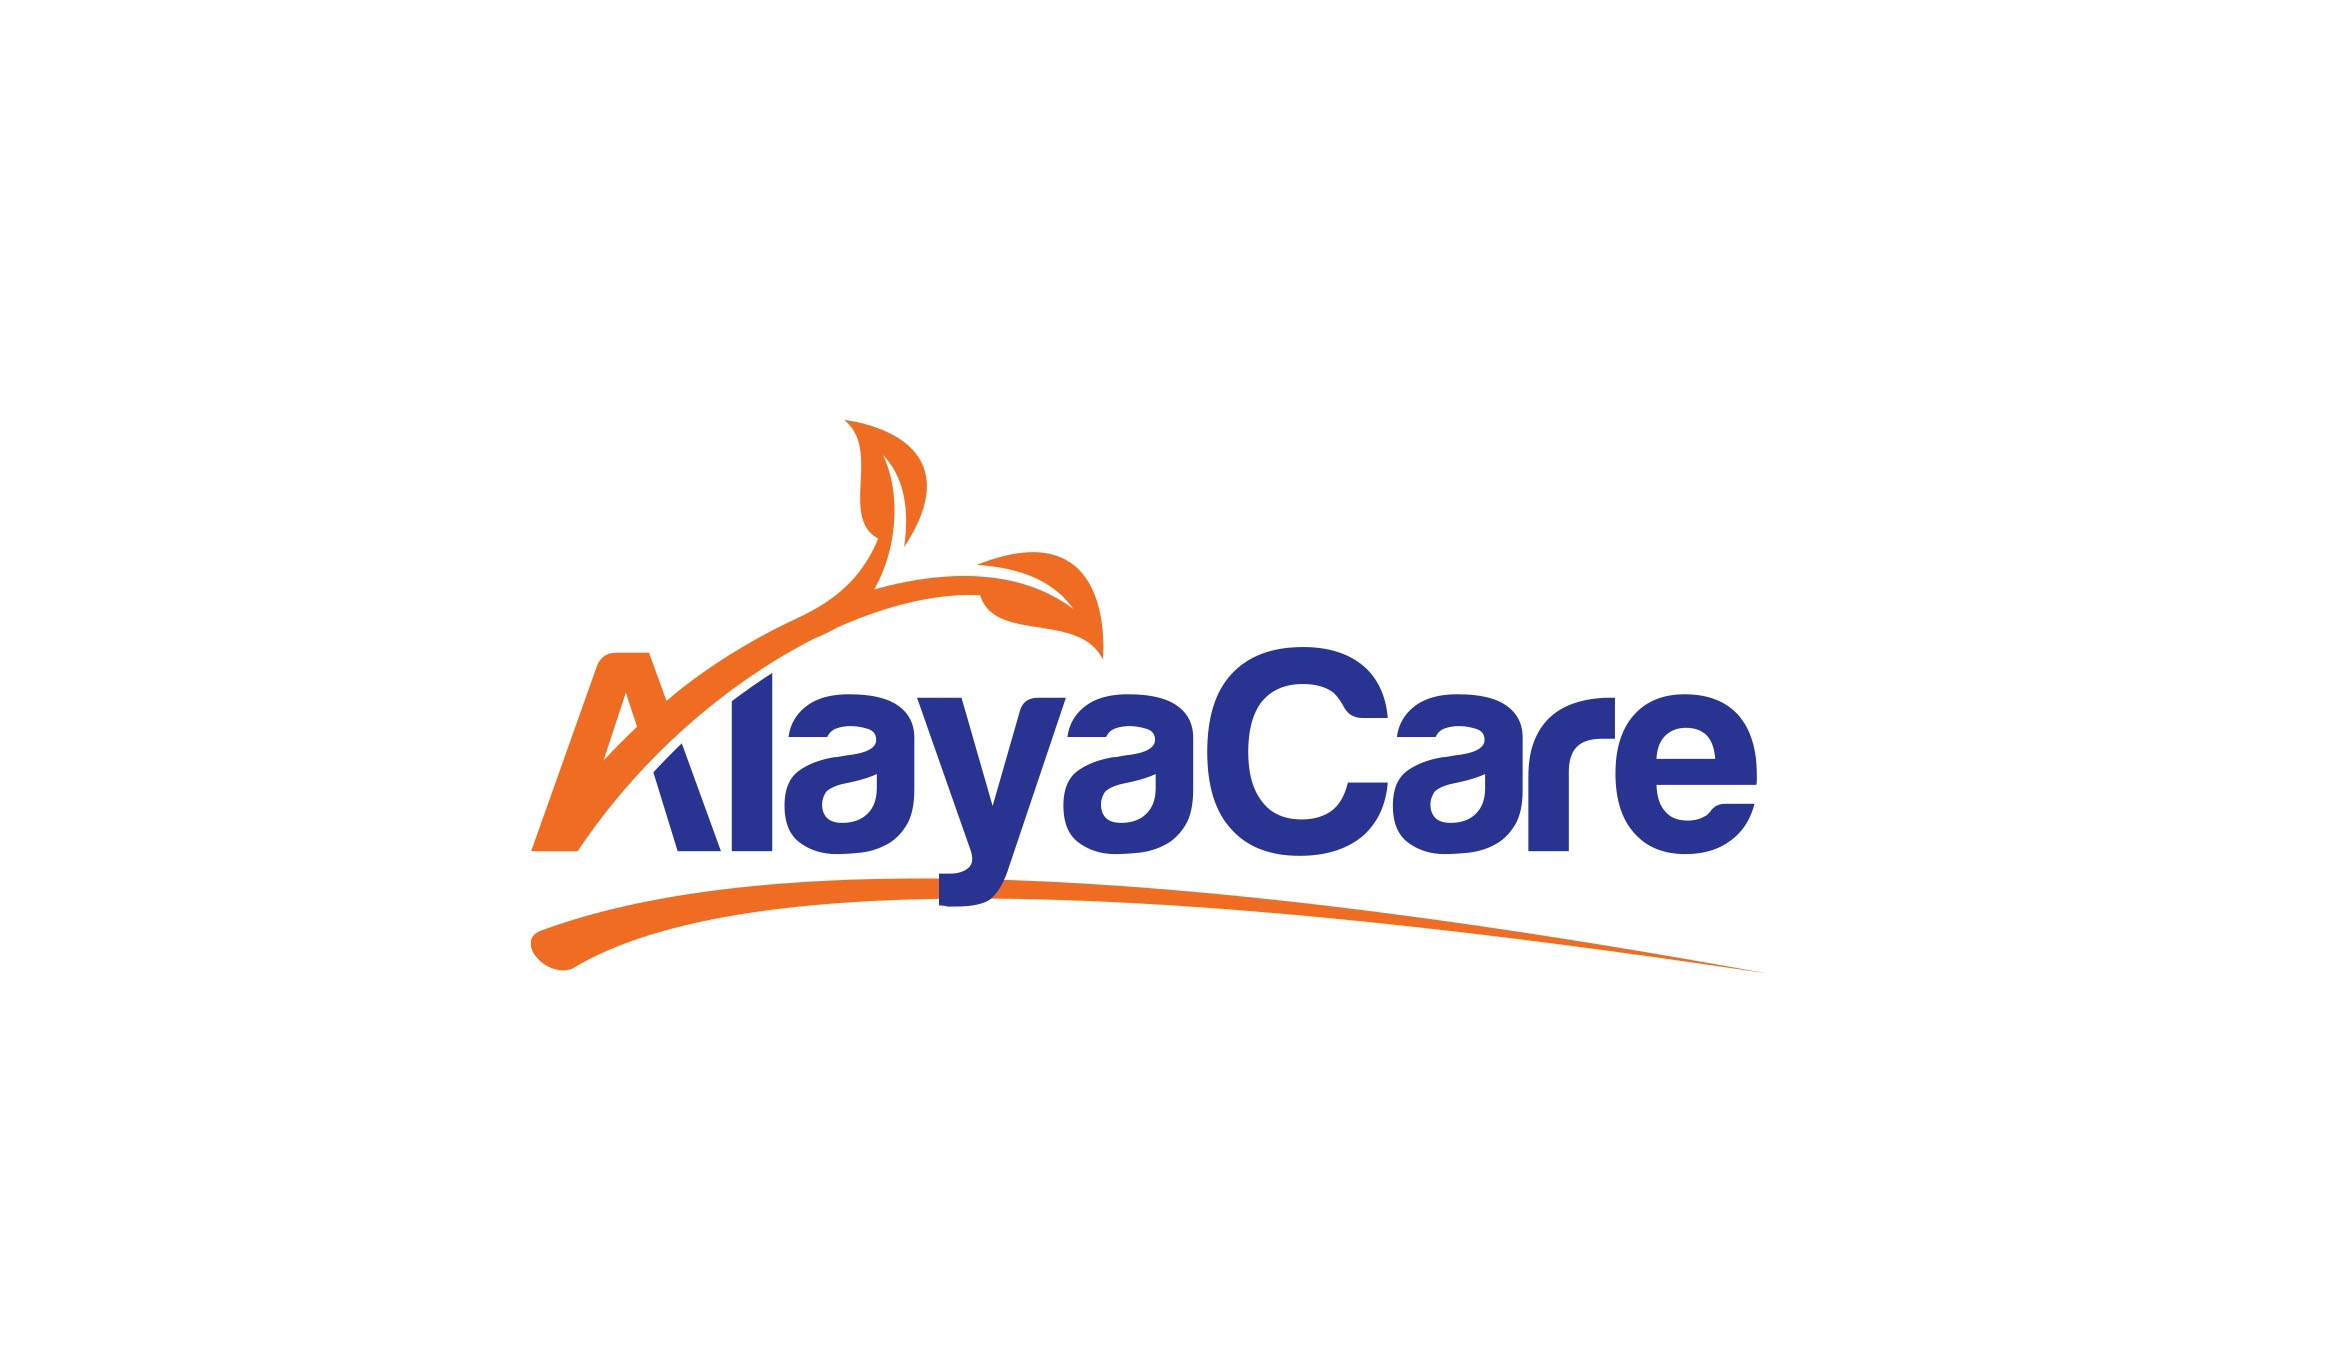 alayacare-logo-1280x800-1.jpg